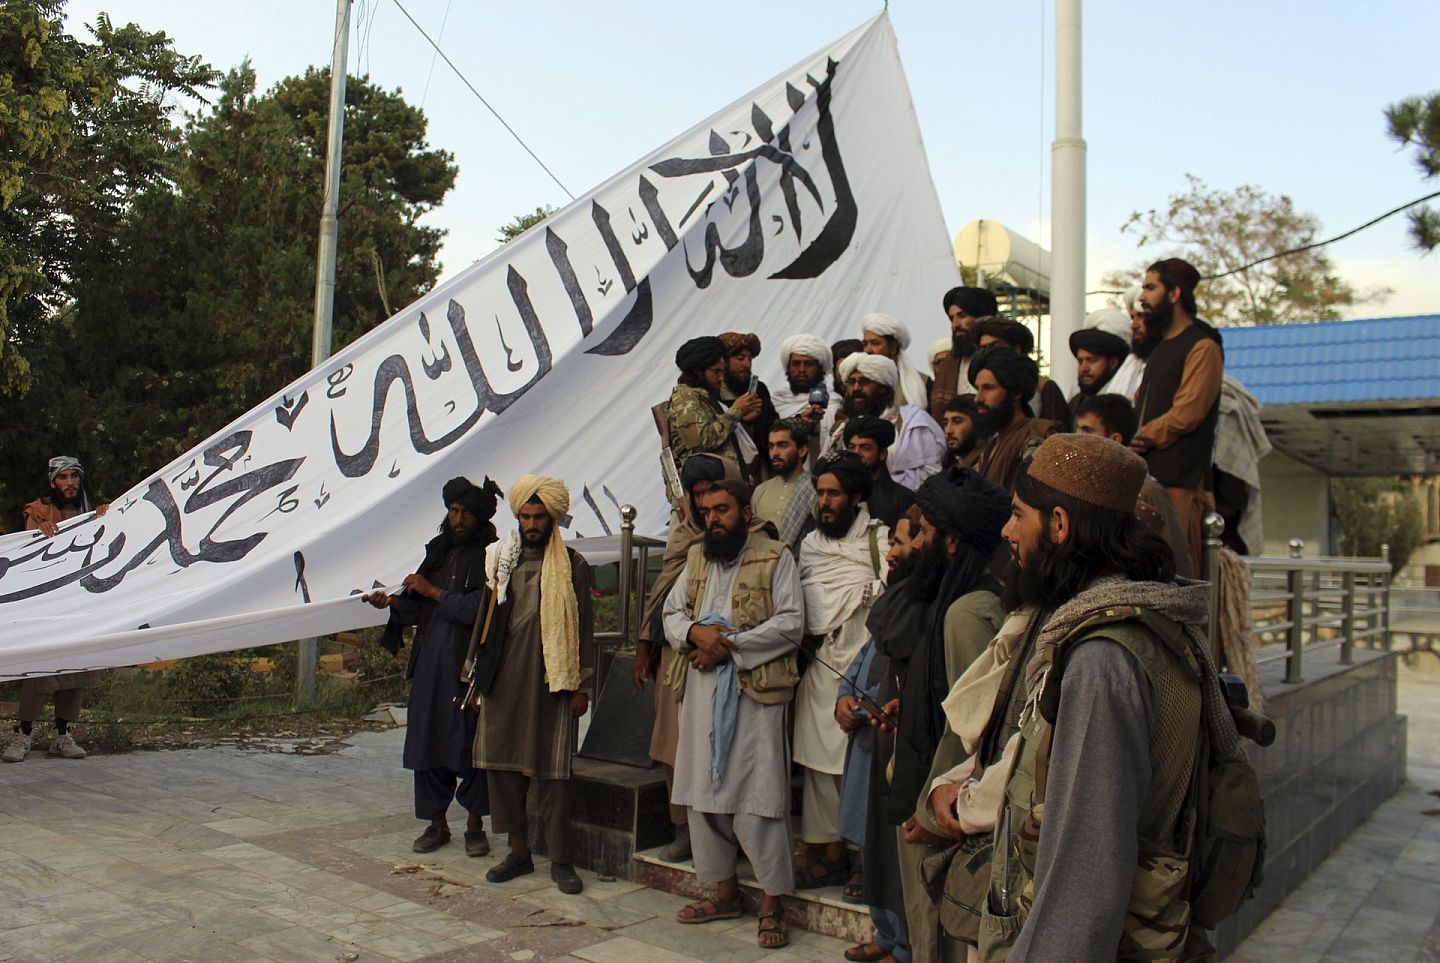 阿富汗塔利班使用的旗帜因为上书清真言，因此西方由此强调其原教旨主义的一面。但很少有人注意到，塔利班秉持的德奥班迪（Deobandi）学派思想，这一学派在巴基斯坦促成了民族团结，在阿富汗却变得死硬而执拗。（美联社）